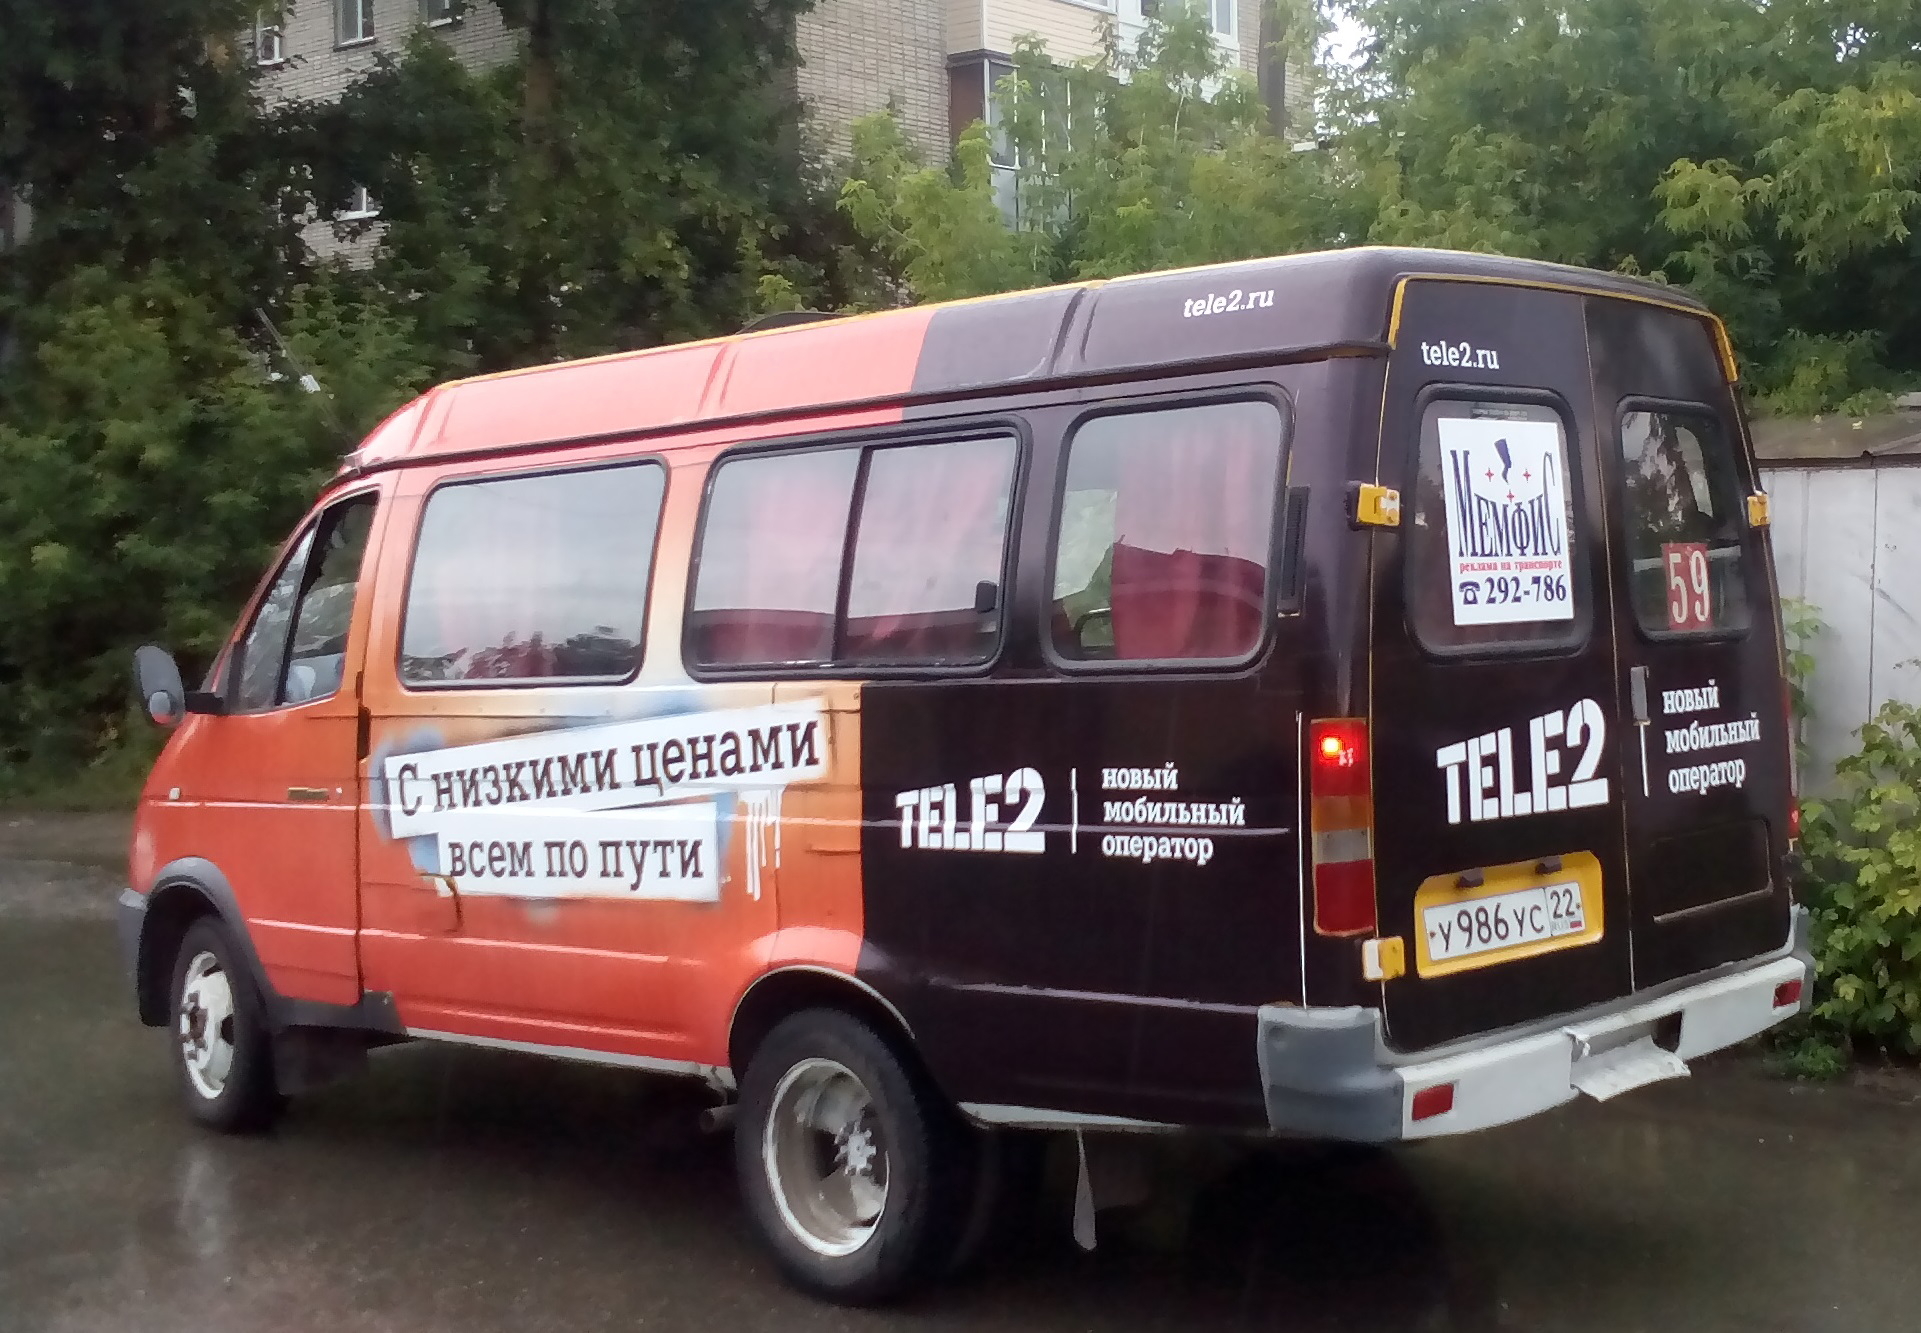 Маршрутное такси ульяновск. Реклама на маршрутках. Реклама на автобусах. Реклама на маршрутной газели. Реклама на транспорте такси.